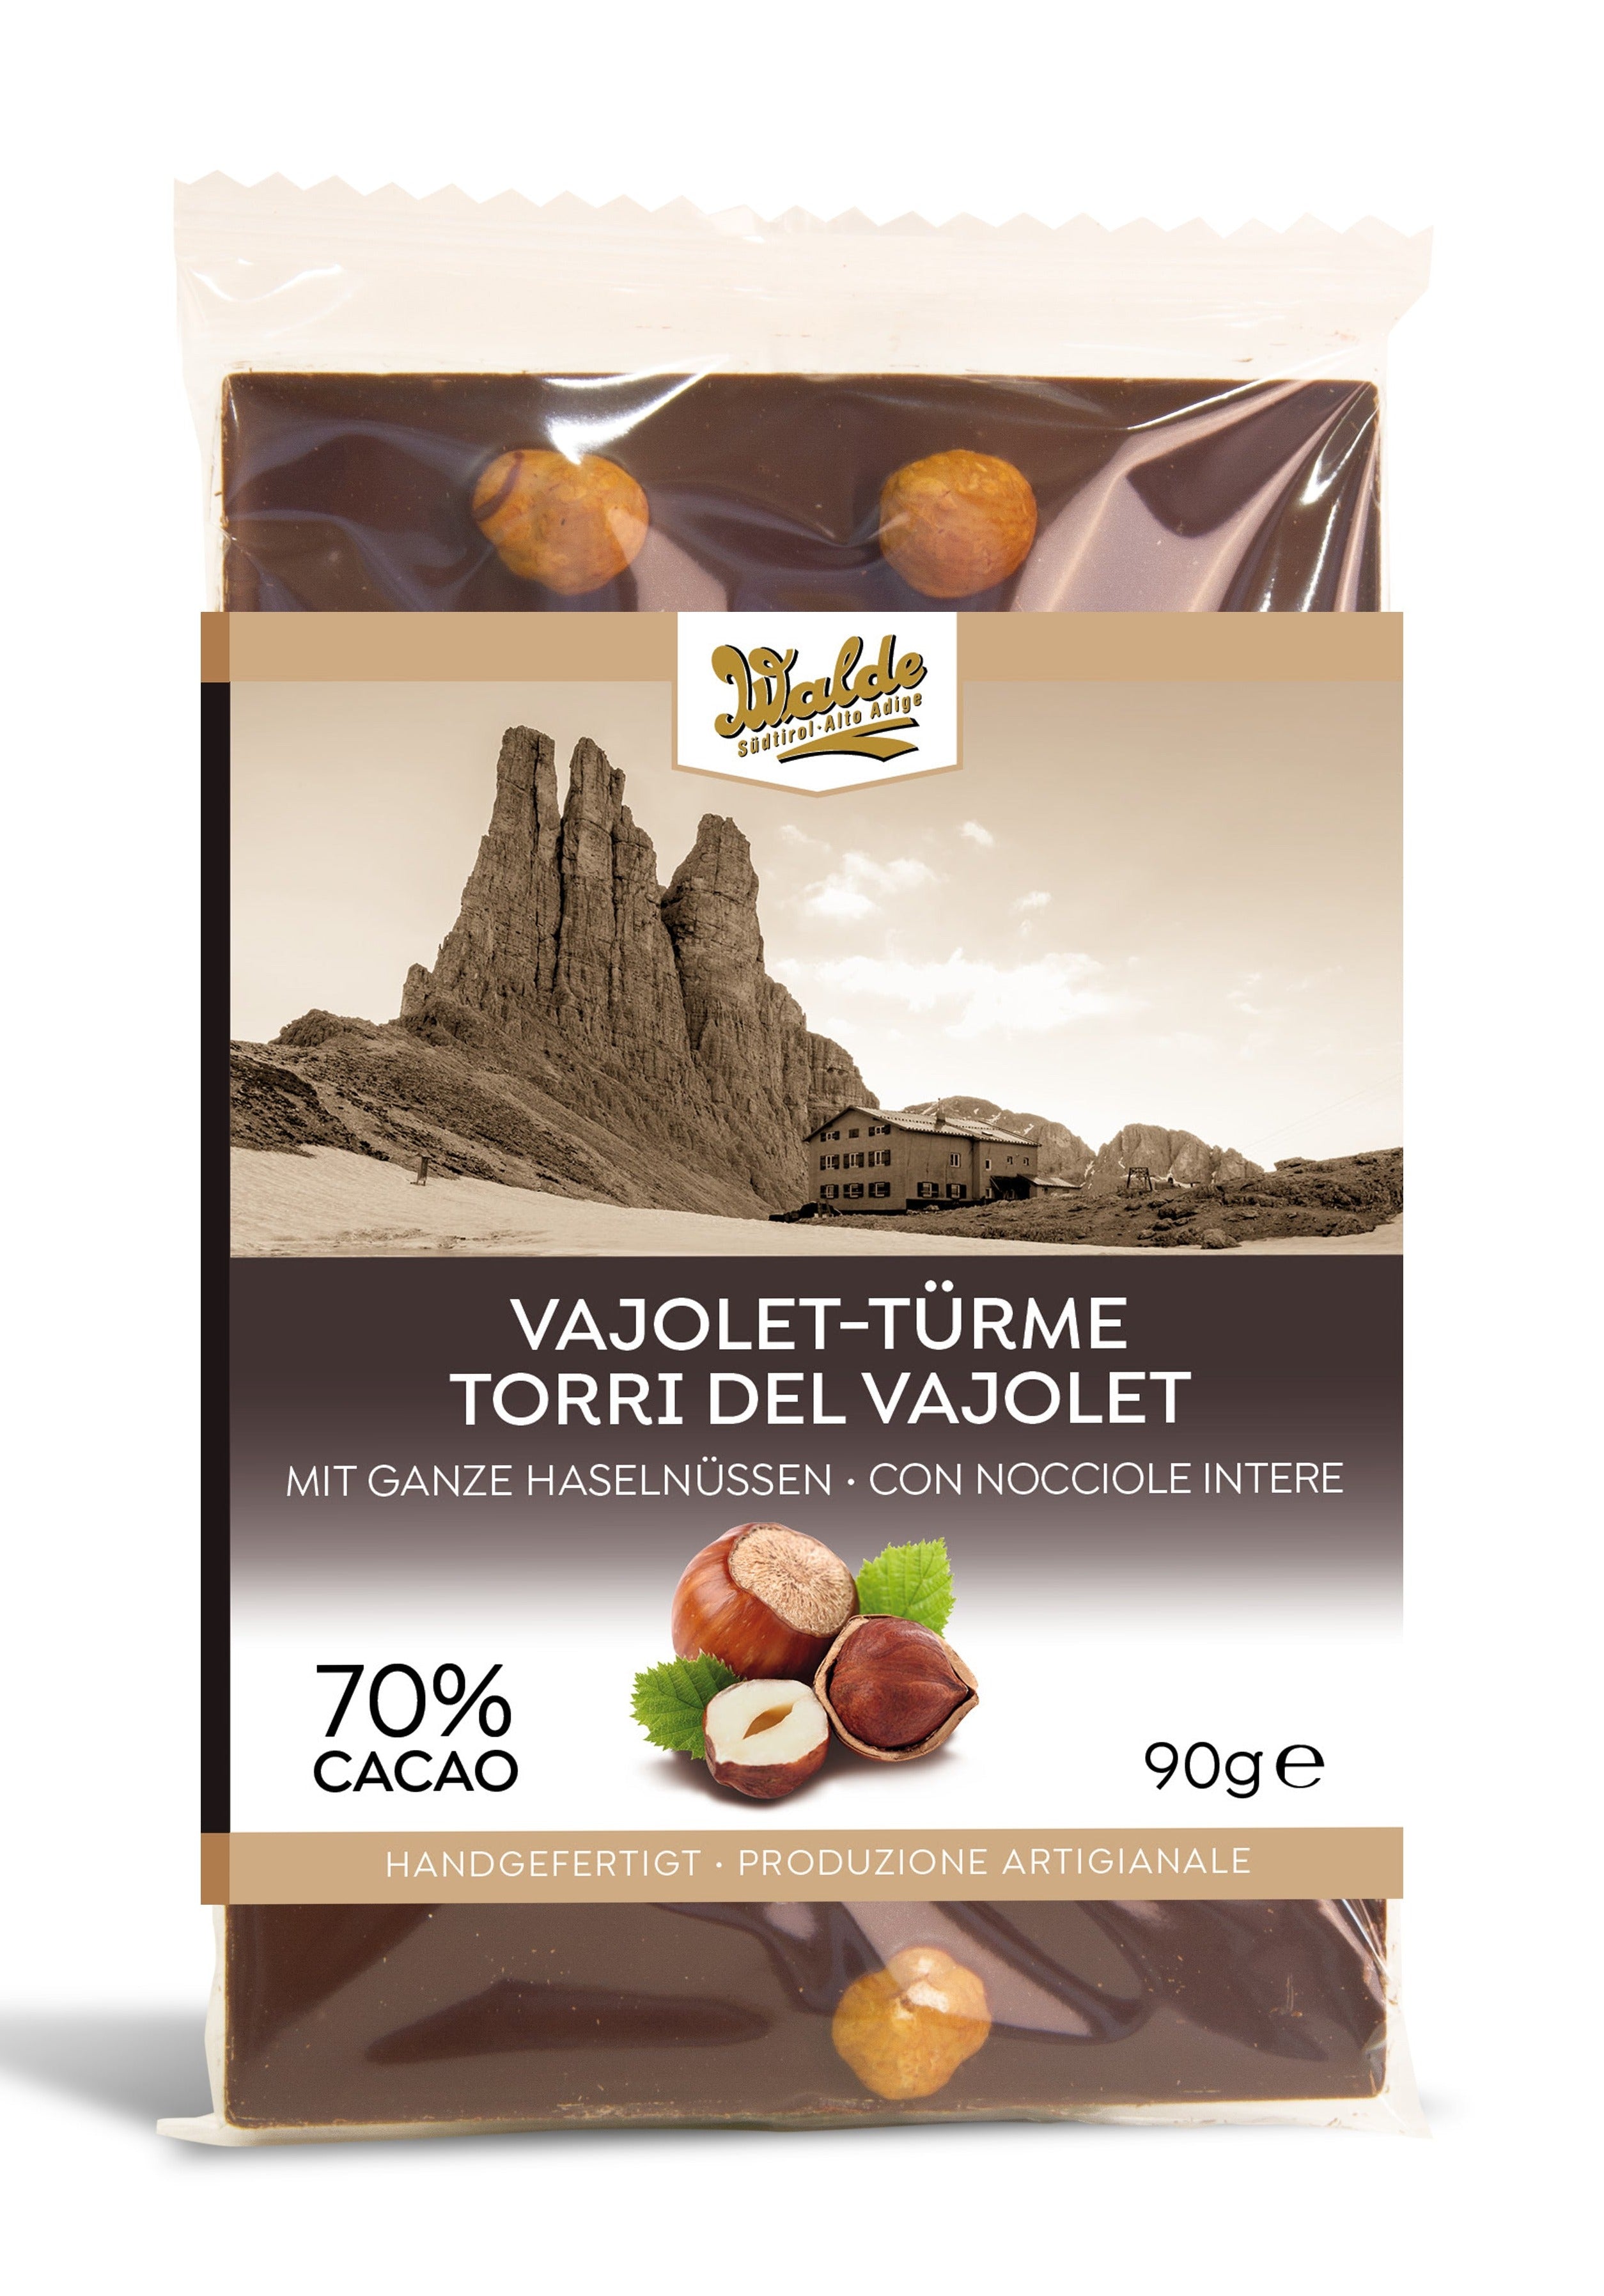 VAJOLET-TURME - Zartherbe Schokolade mit ganzen Haselnüssen